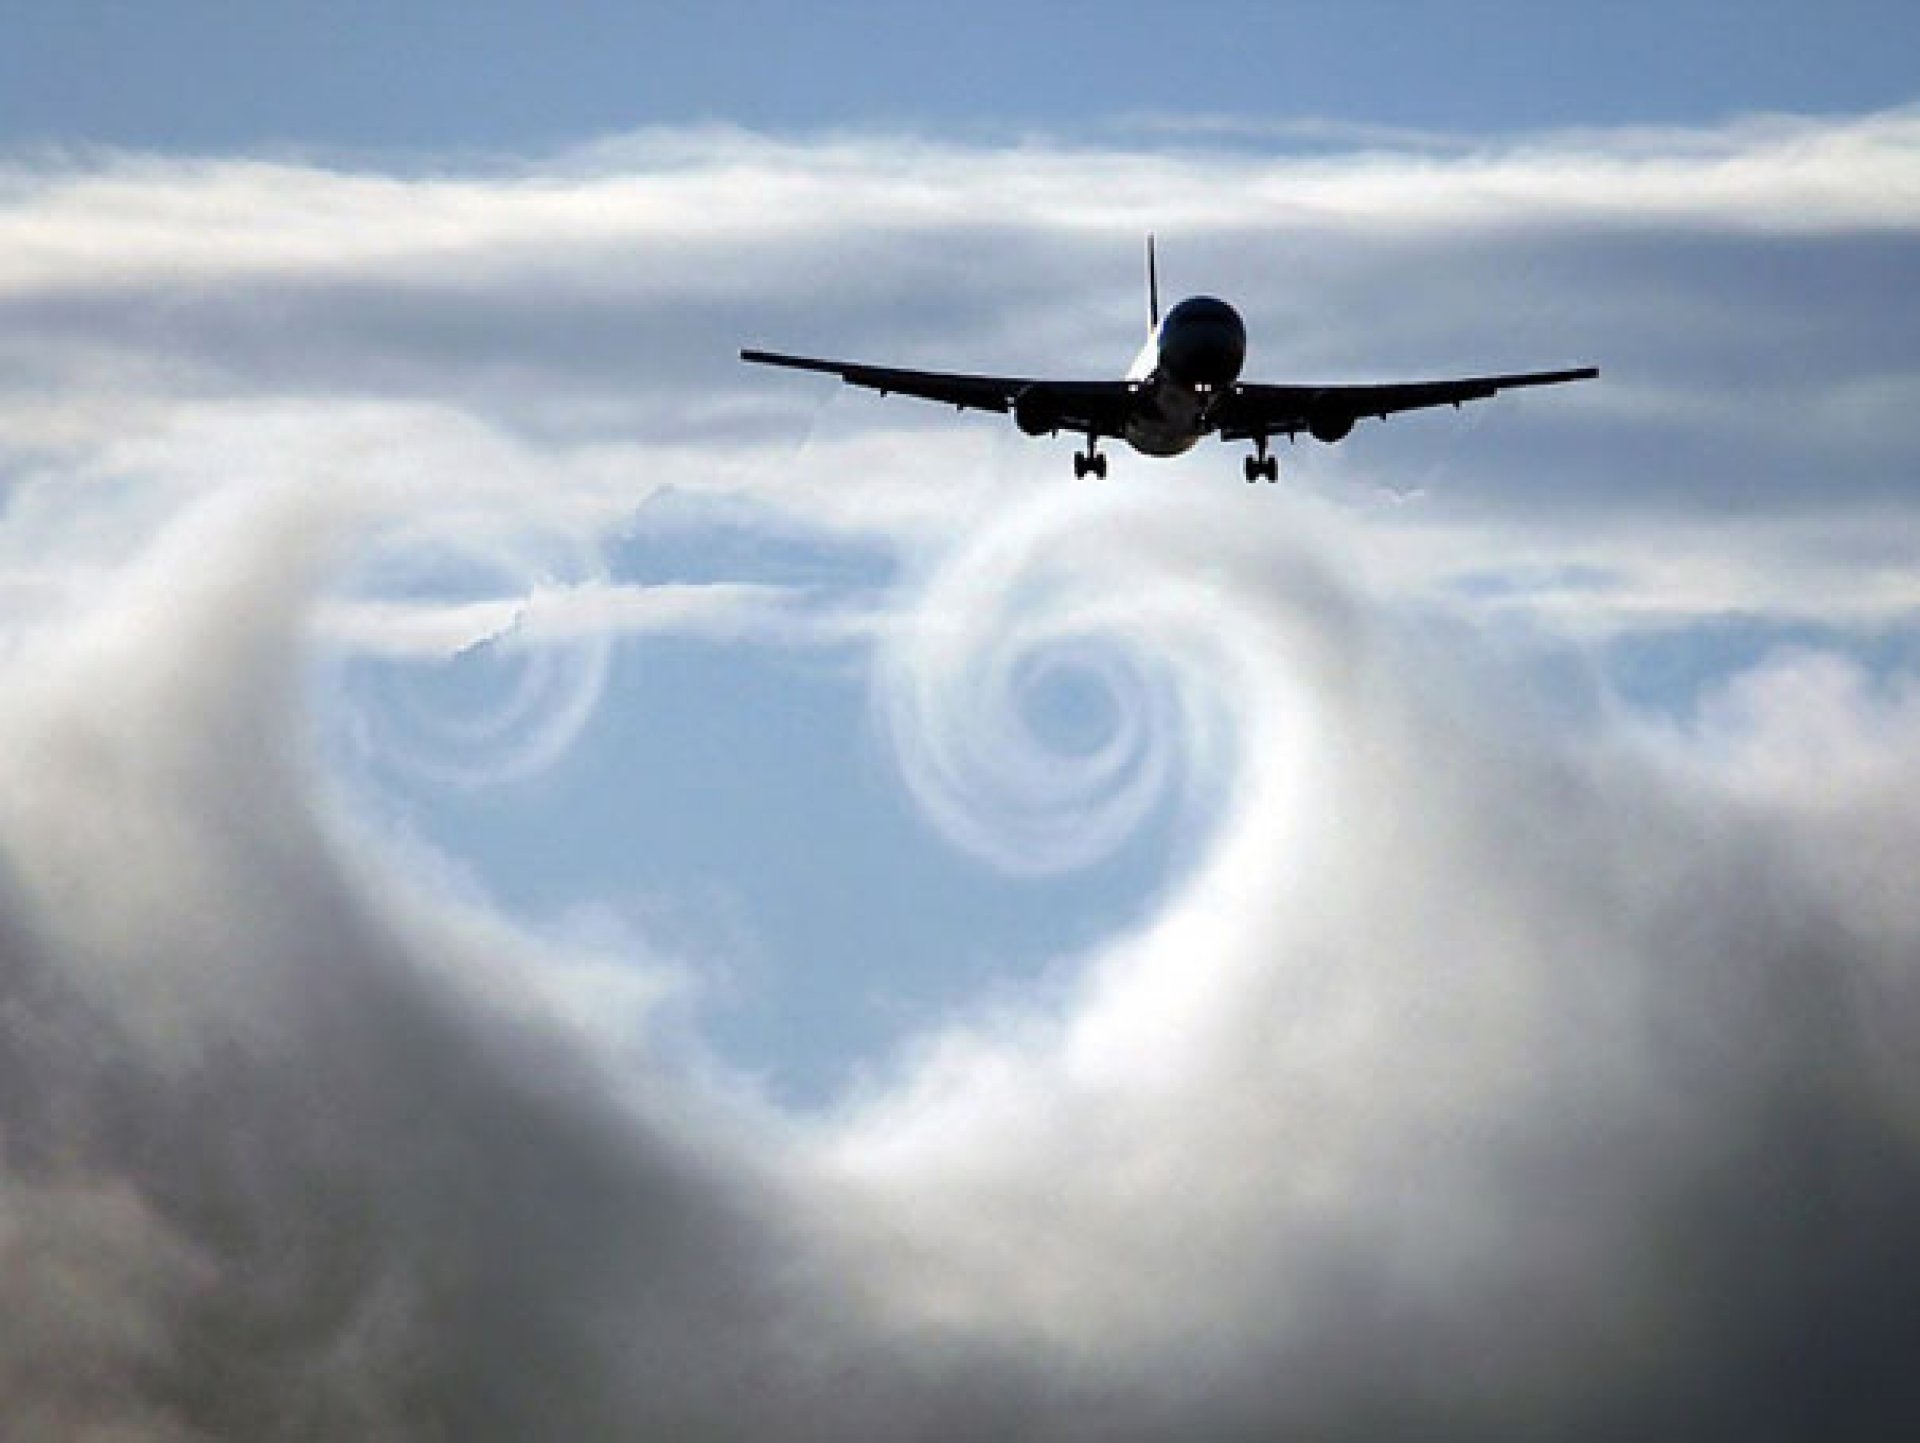 Жужжание в небе. Самолет в небе. Cfvjktn DF yt,t. Самолет в облаках. Пролетающий самолет.